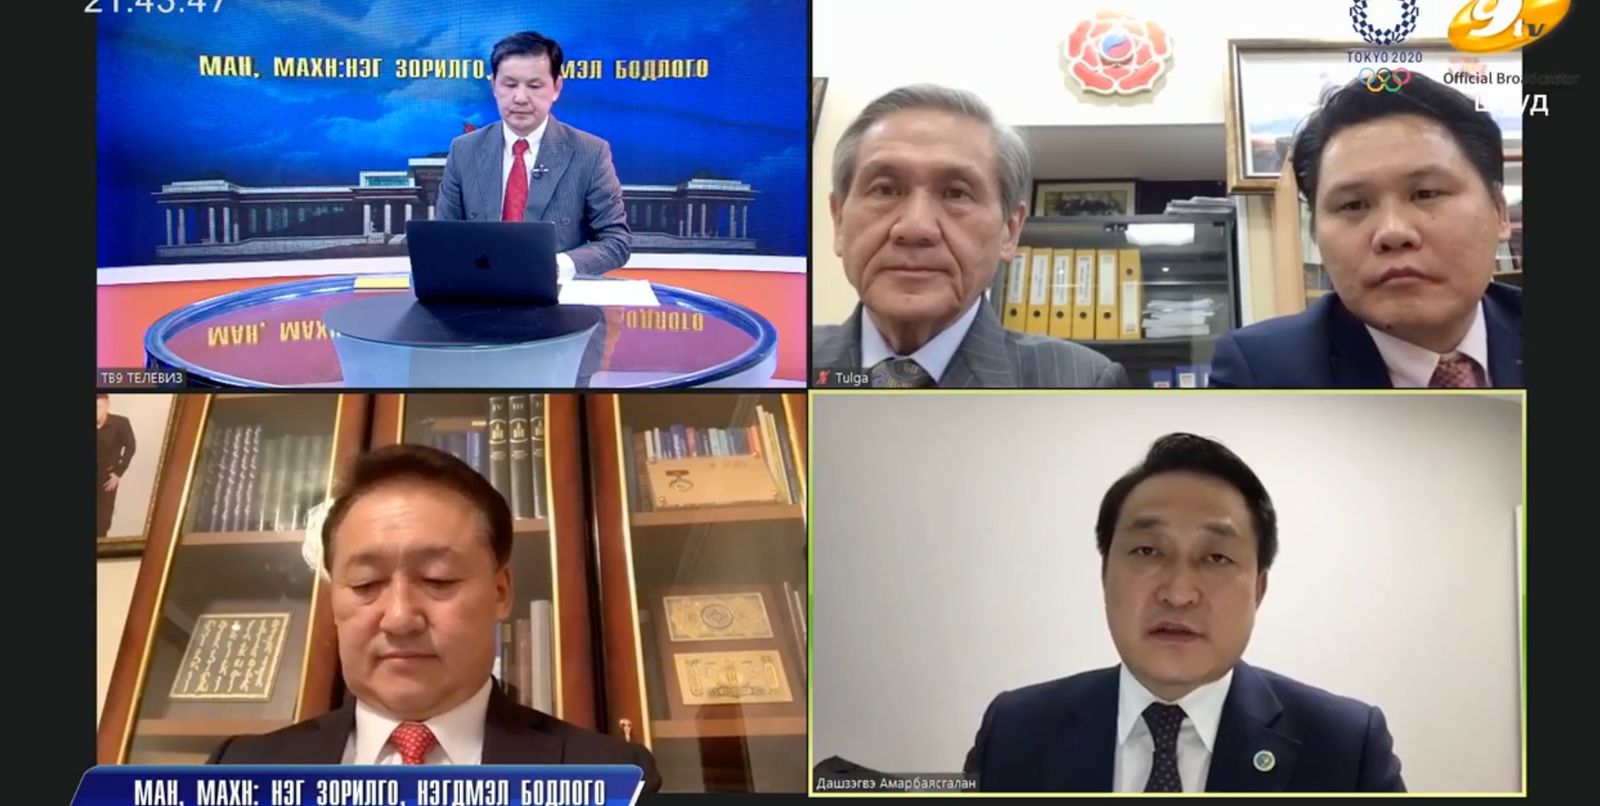 몽골인민혁명당 N.Enkhbayar 대표는 대통령 선거에서 몽골인민당 후보를 지지할 것이라고 말해.jpg